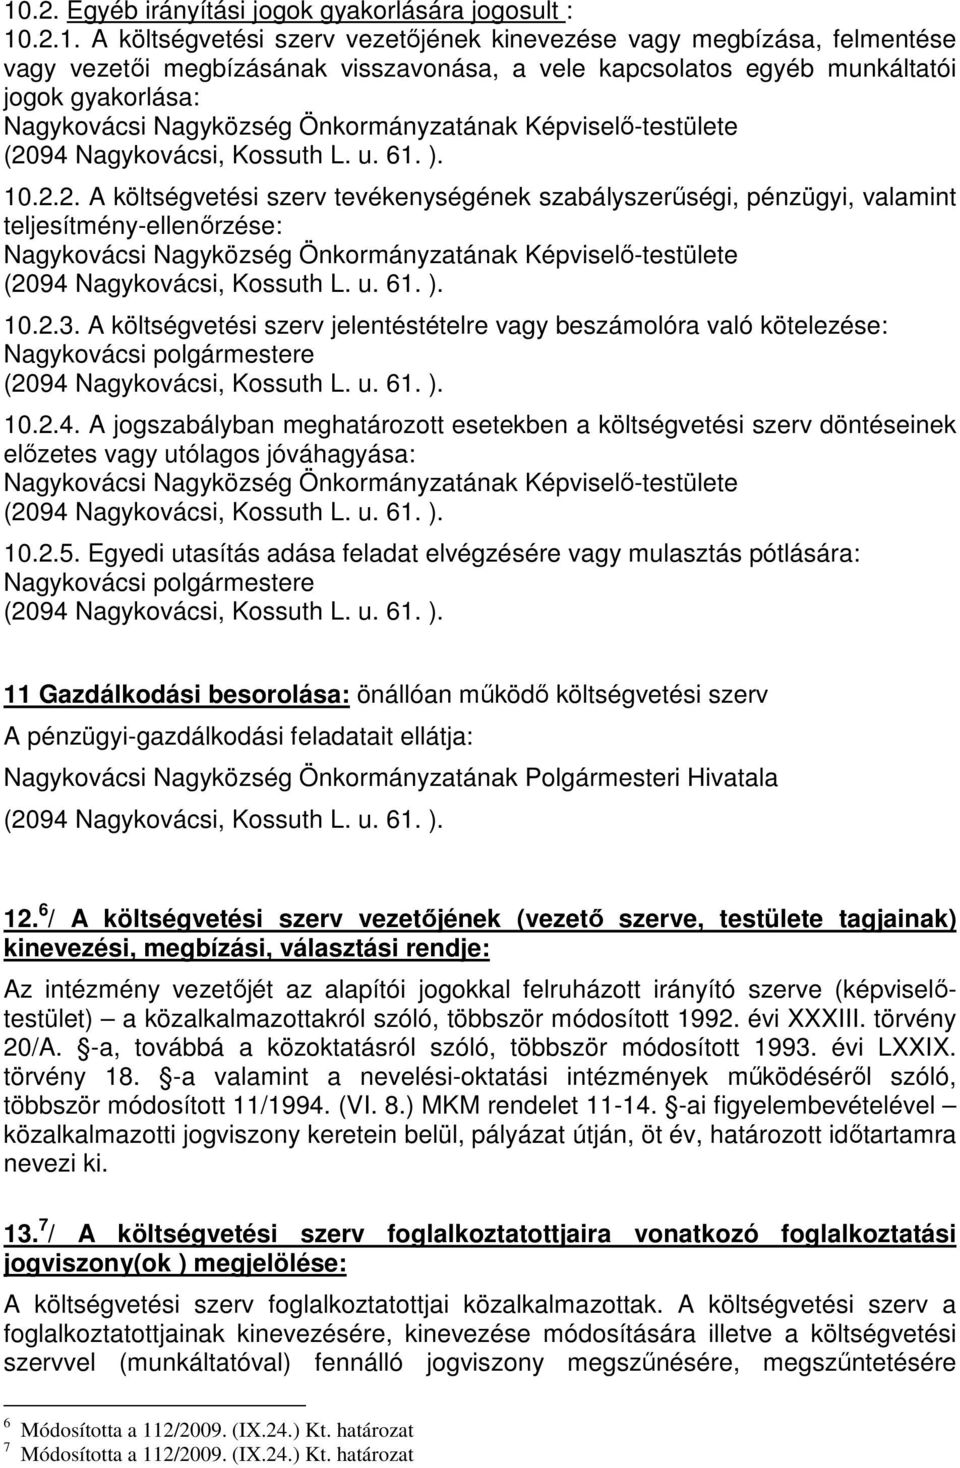 A költségvetési szerv jelentéstételre vagy beszámolóra való kötelezése: Nagykovácsi polgármestere 10.2.4.